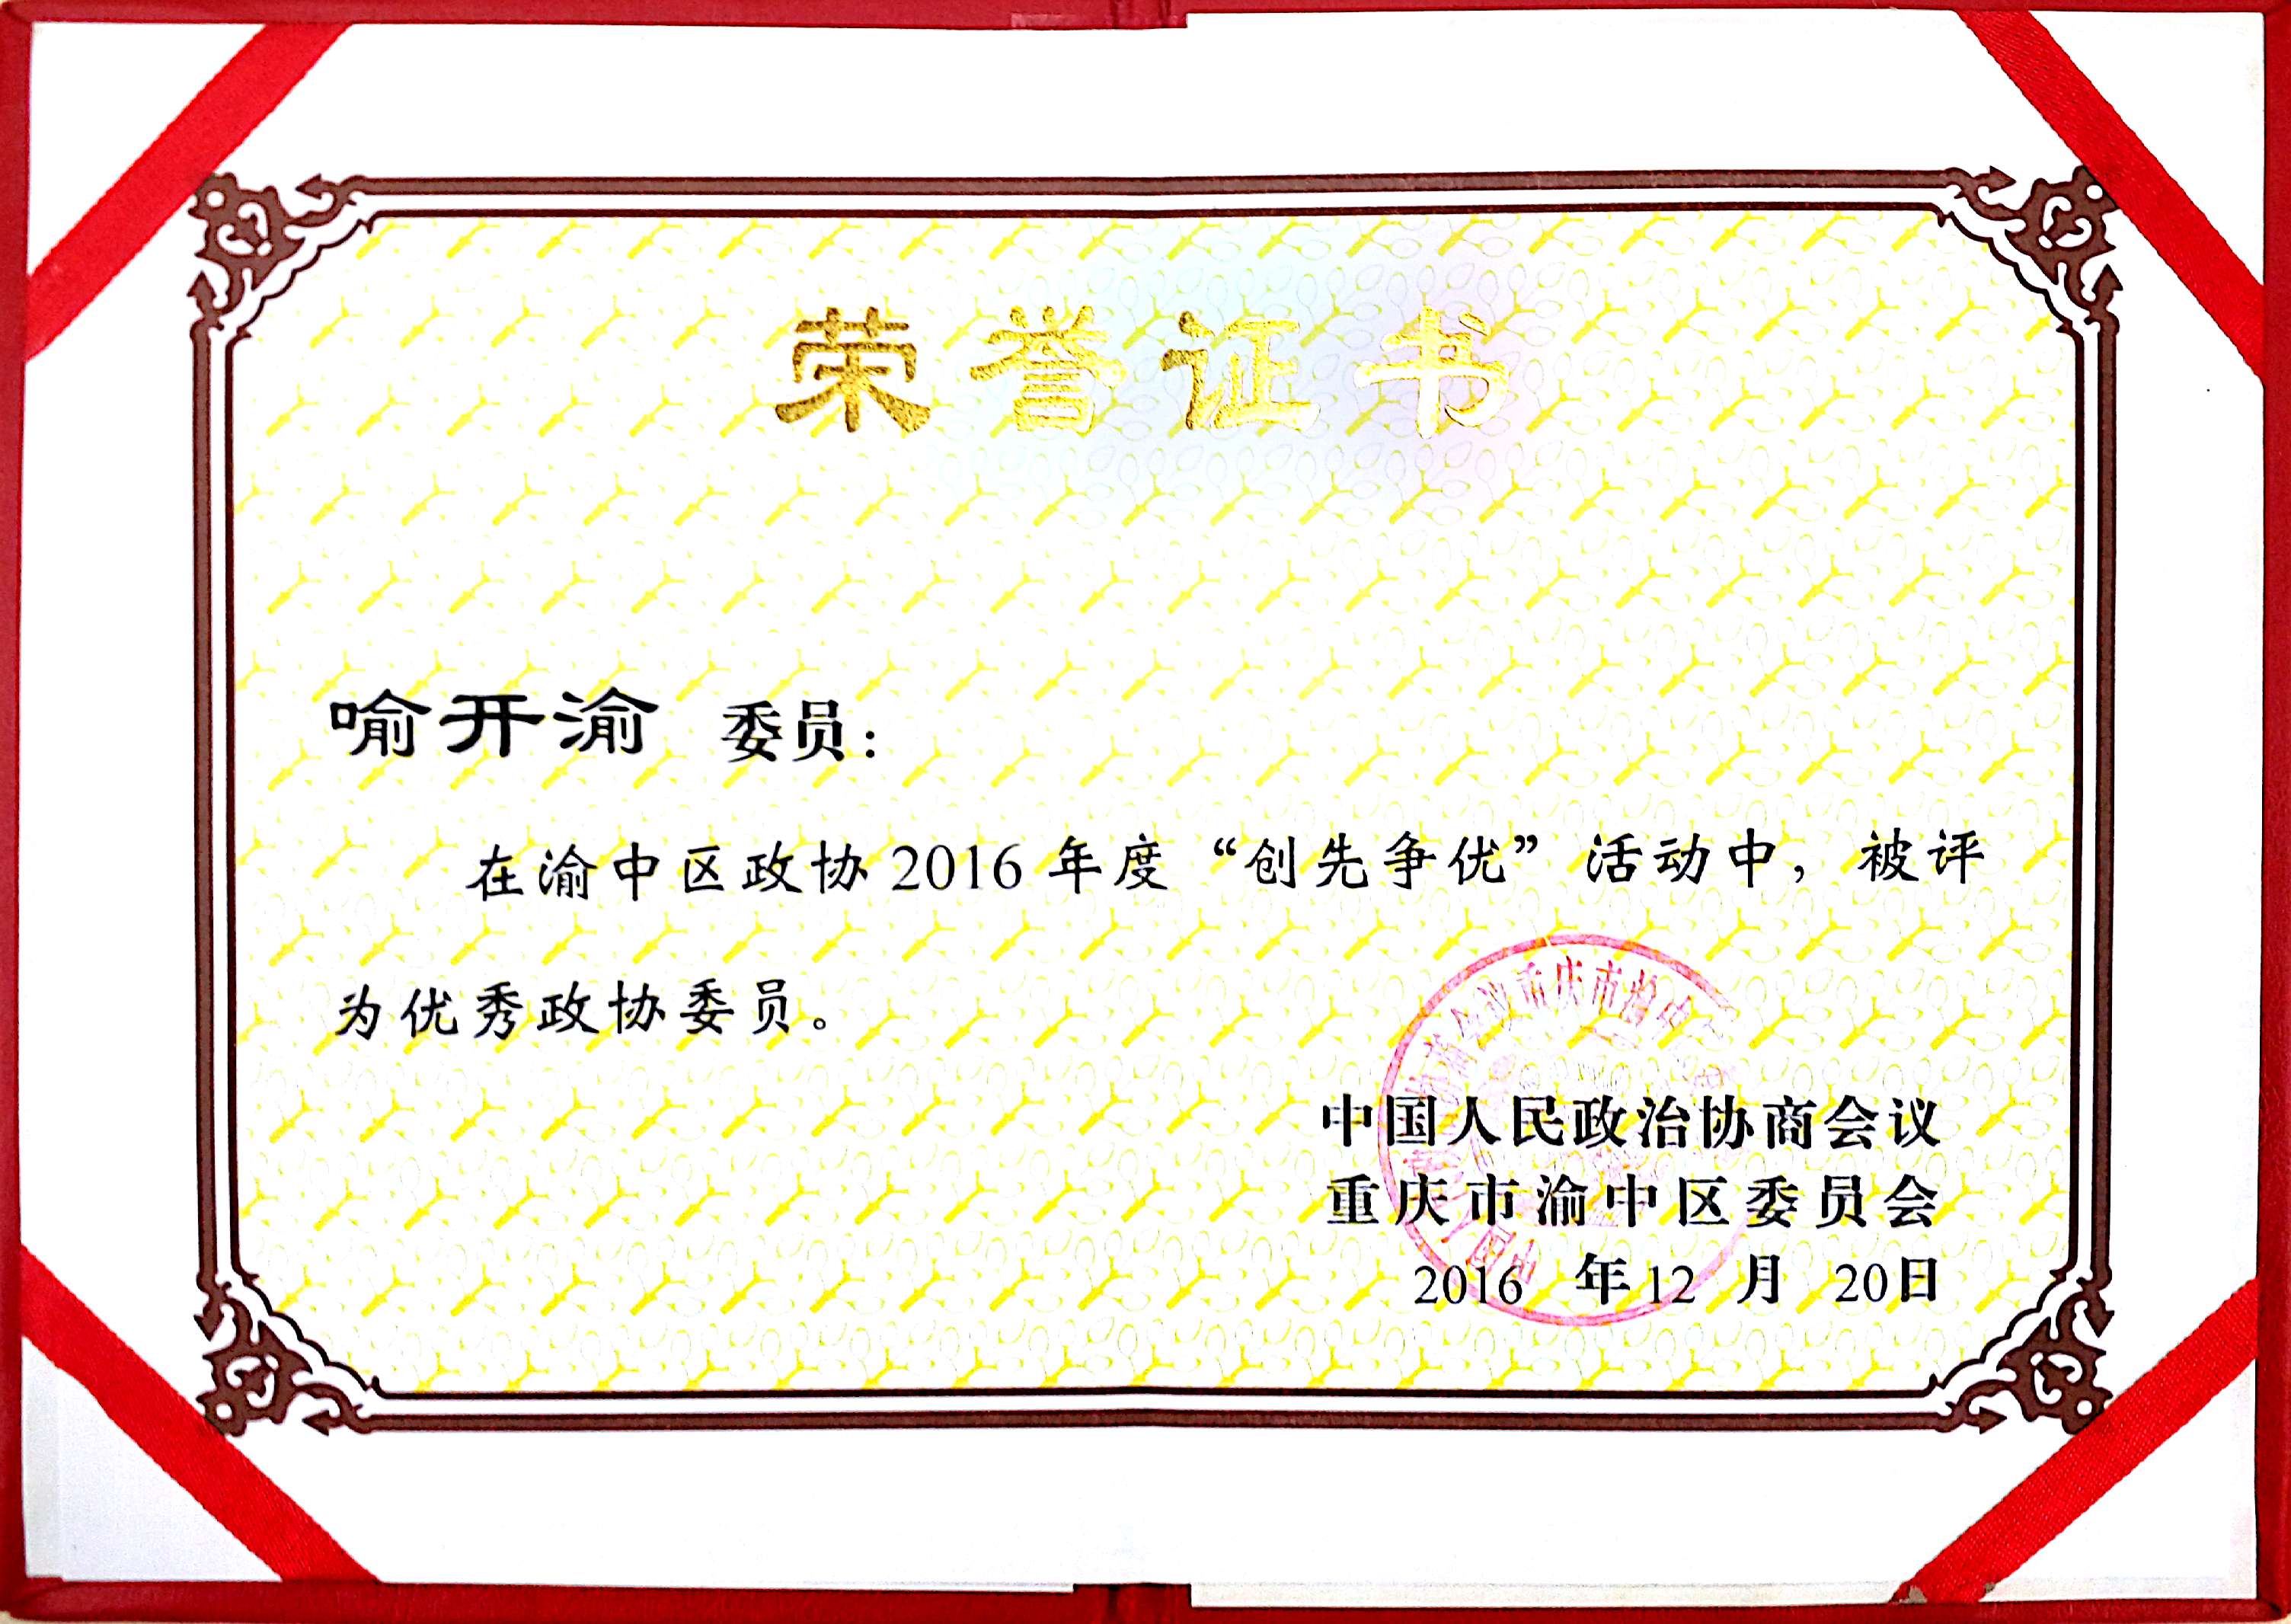 喻开渝委员在2016年“争先创优活动中”，被评为优秀政